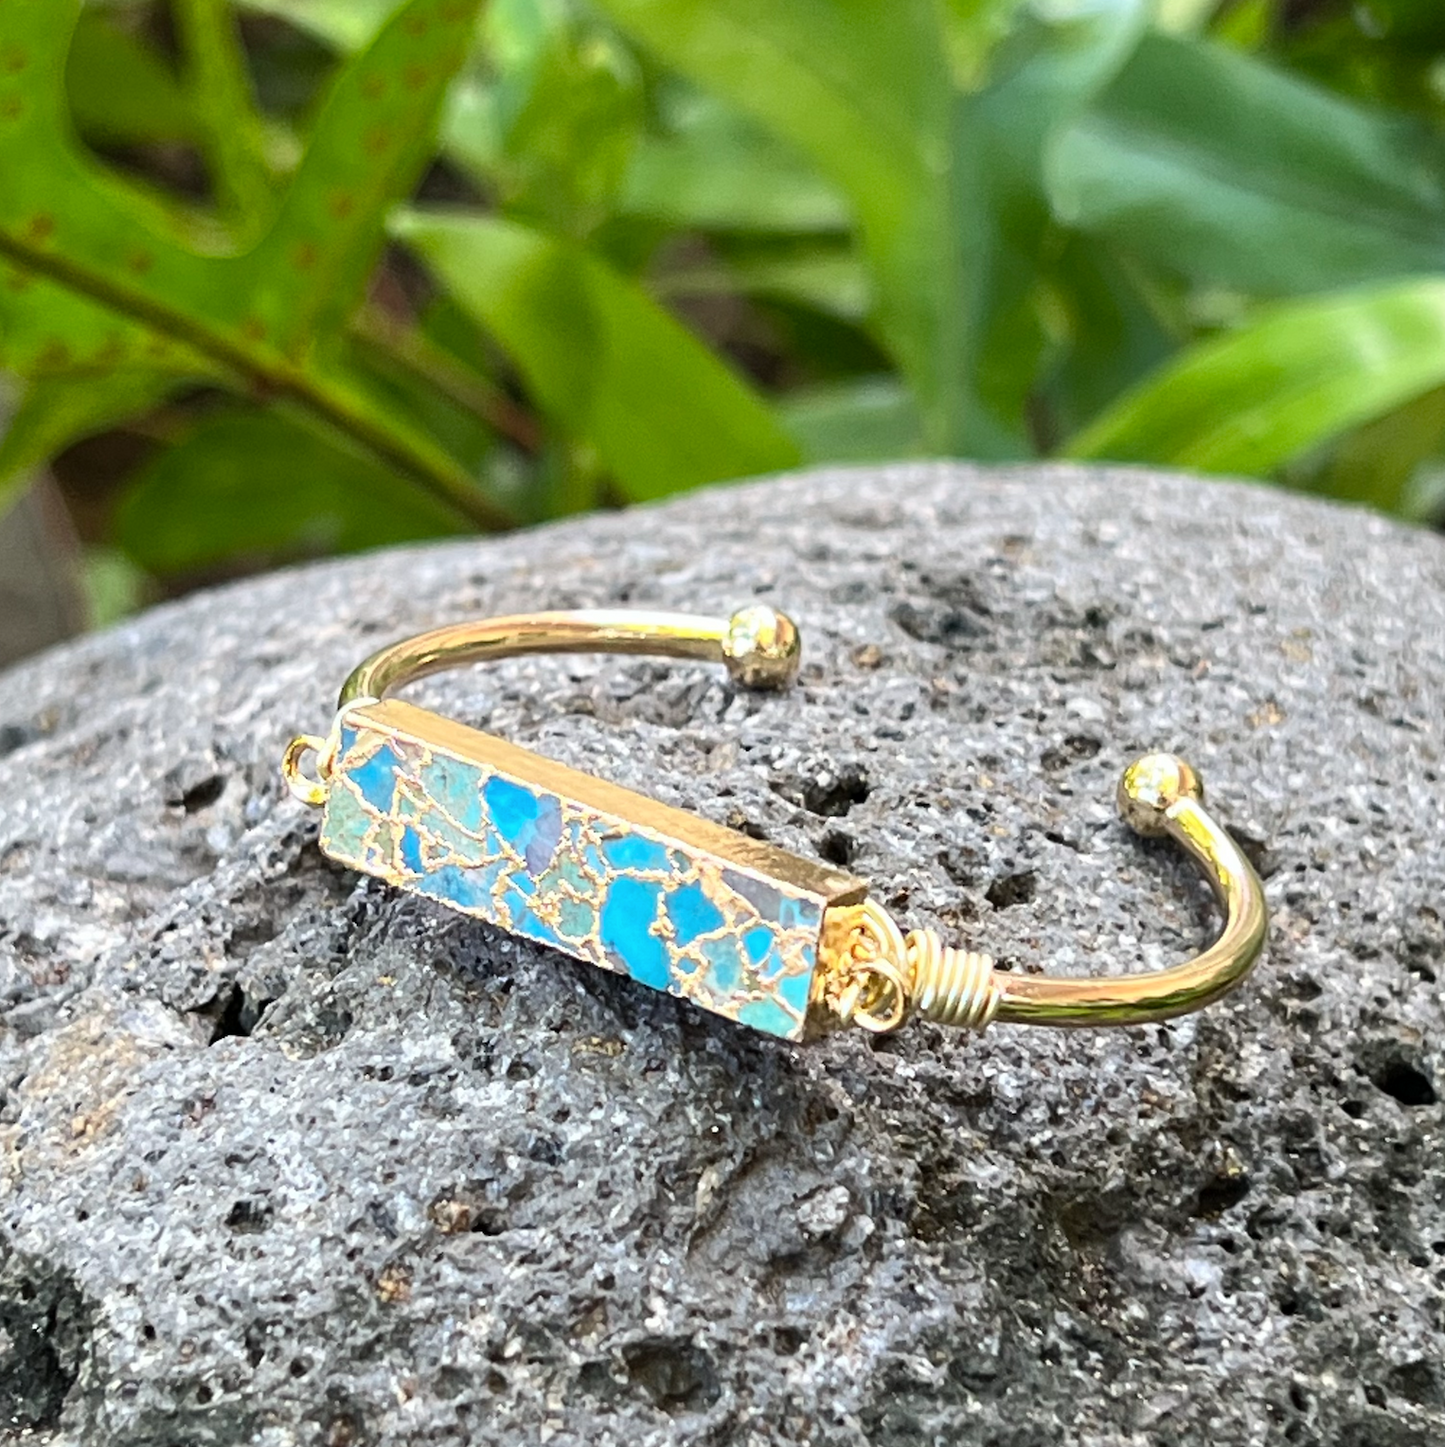 Blue Turquoise Bar Gold Bangle Cuff Bracelet ~ "Life Force Energy"